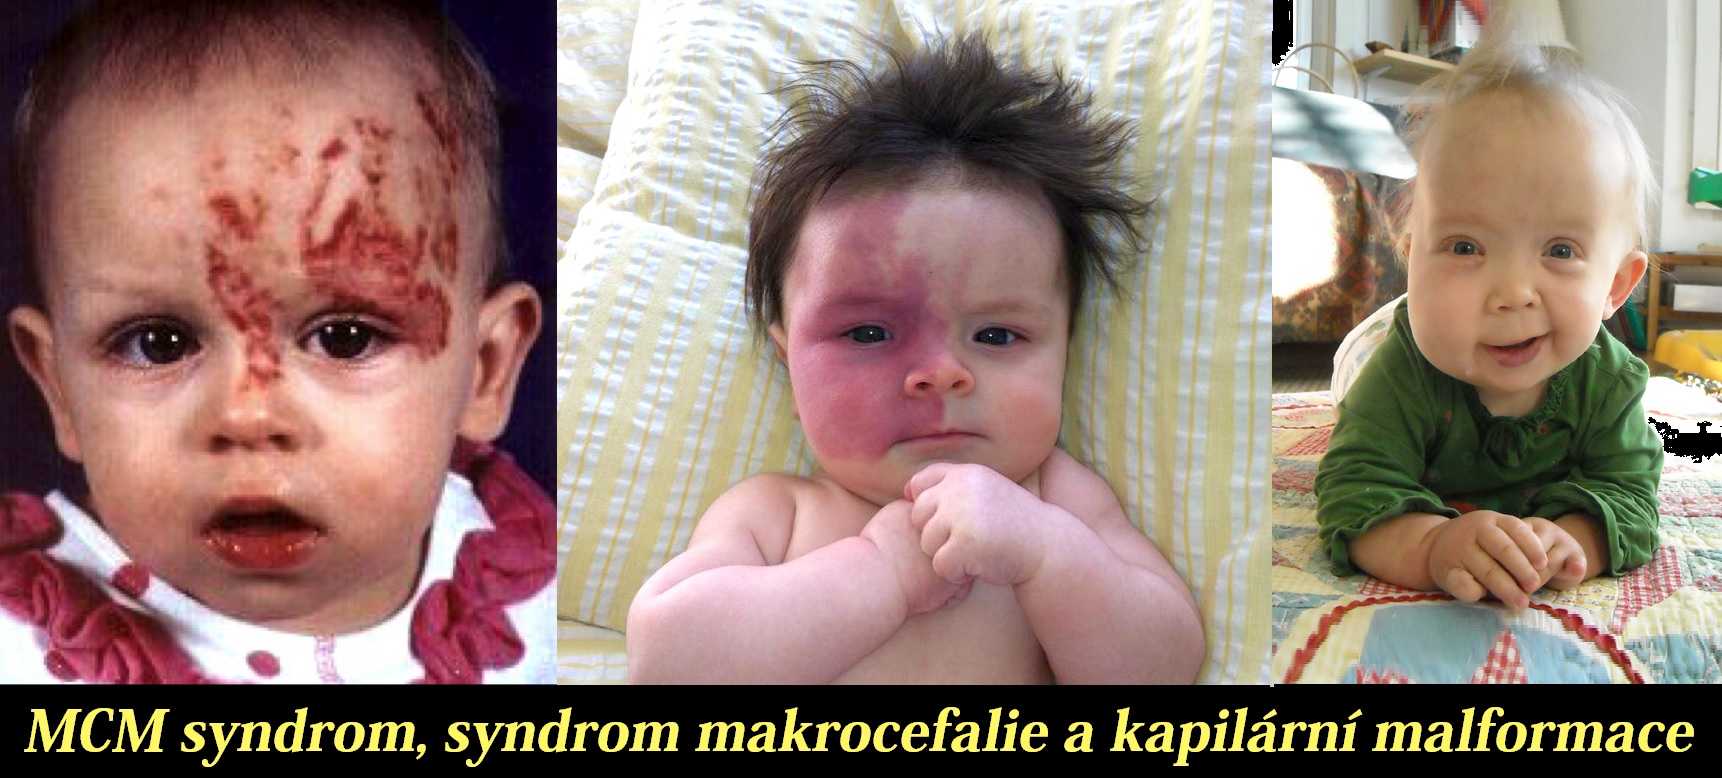 mcm-syndrom-syndrom-makrocefalie-a-kapilarni-malformace-priznaky-projevy-symptomy